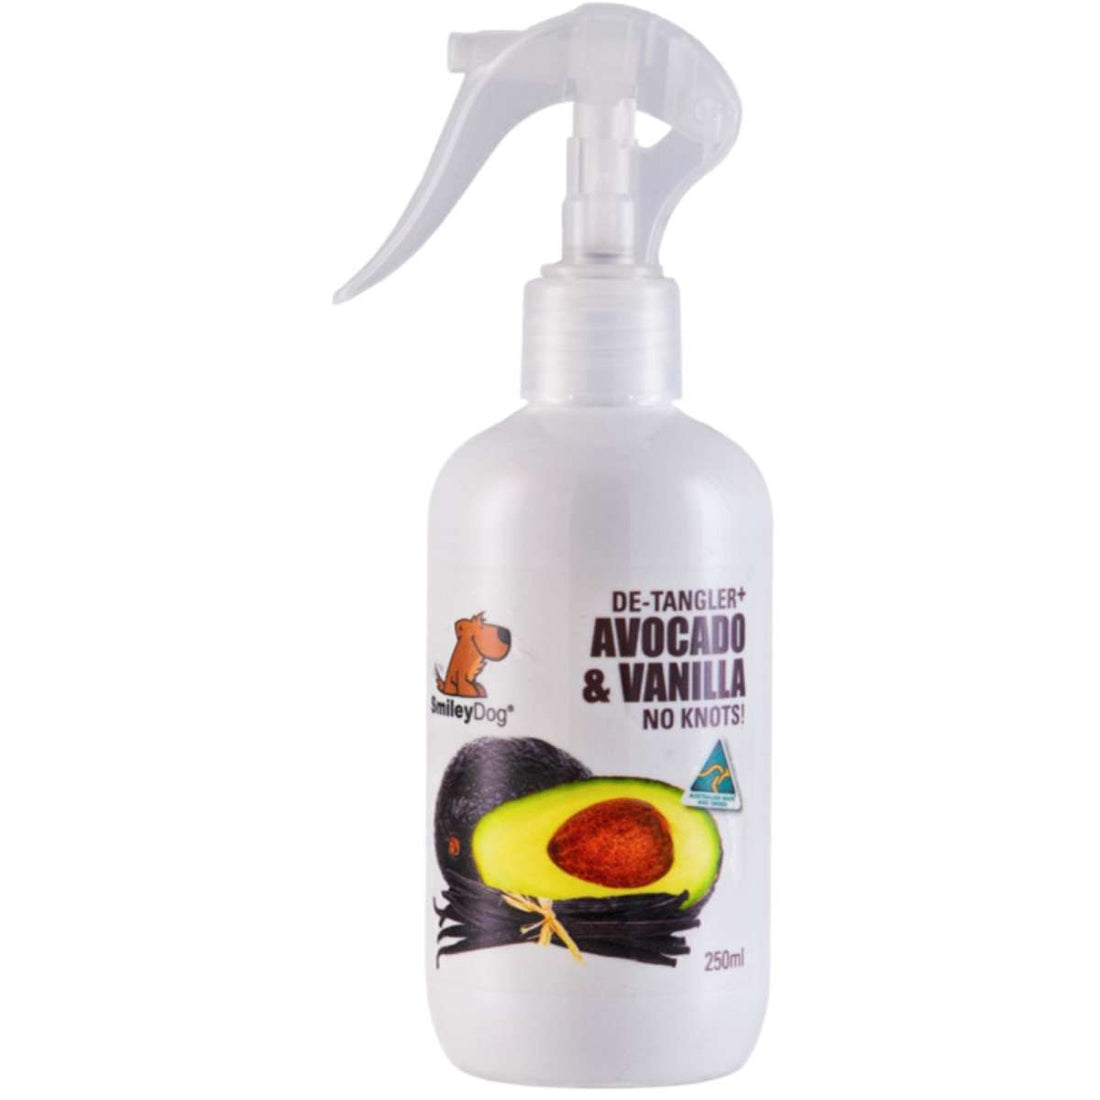 Smiley Dog Natural Avocado & Vanilla Pet De-tangler Spray 250ml